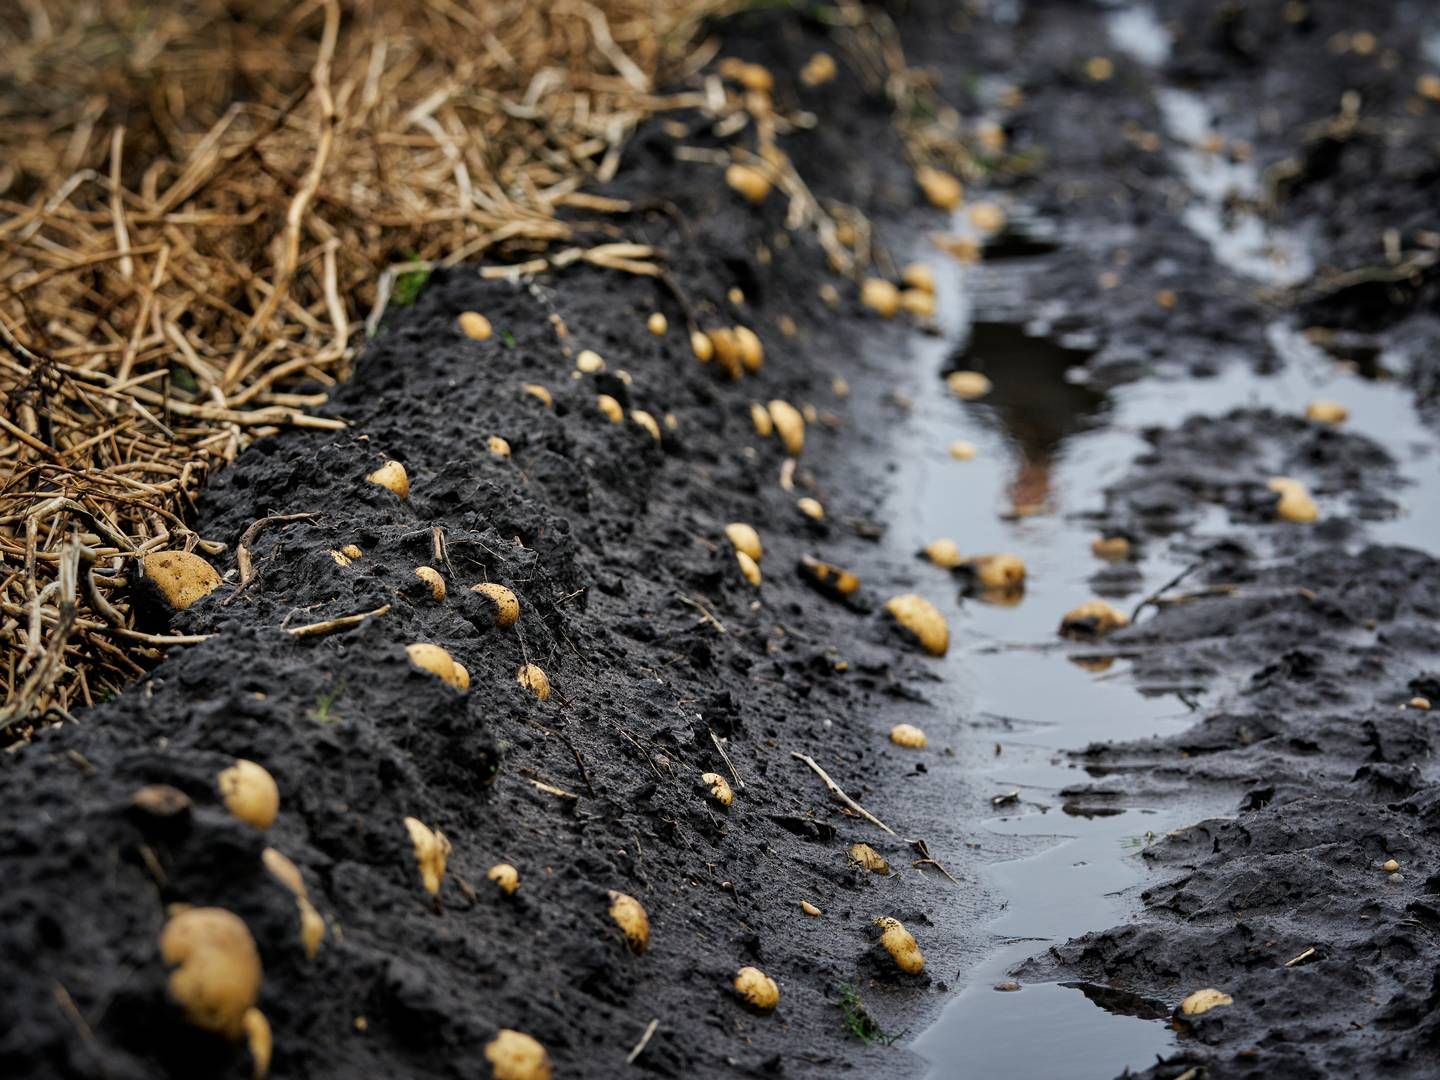 Det våde vejr har været hård for kartoffelavlen. | Foto: Casper Dalhoff